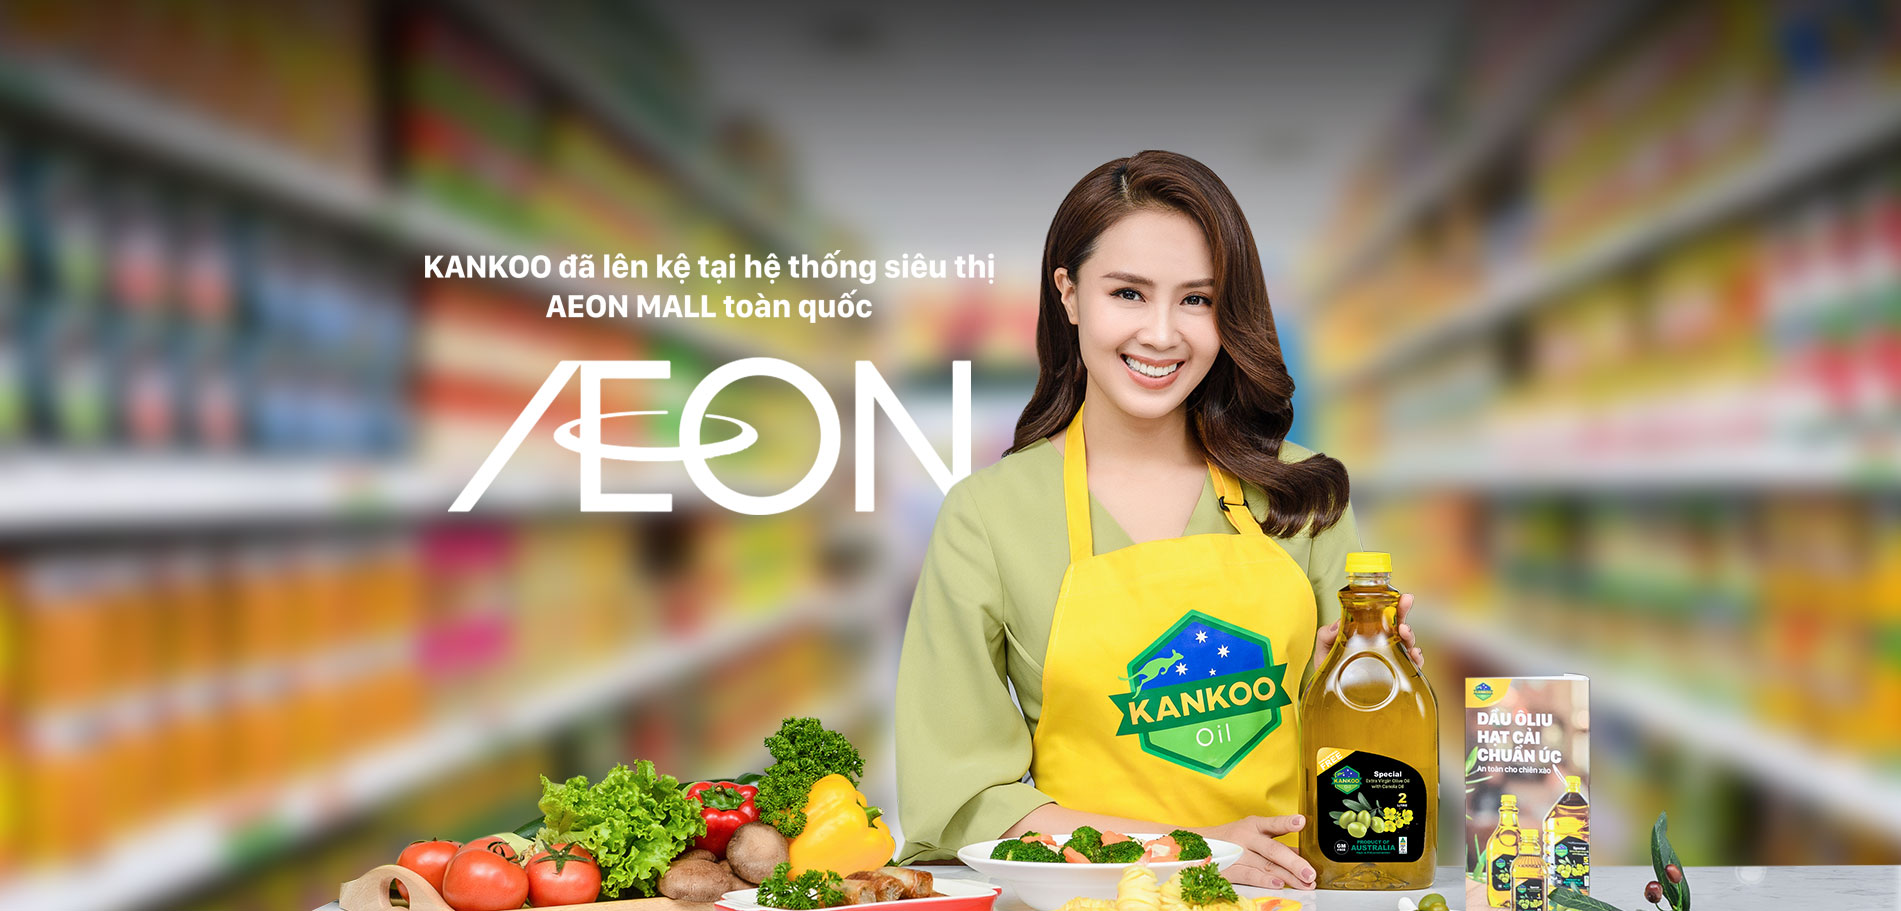 Kankoo tại hệ thống siêu thị Aeon